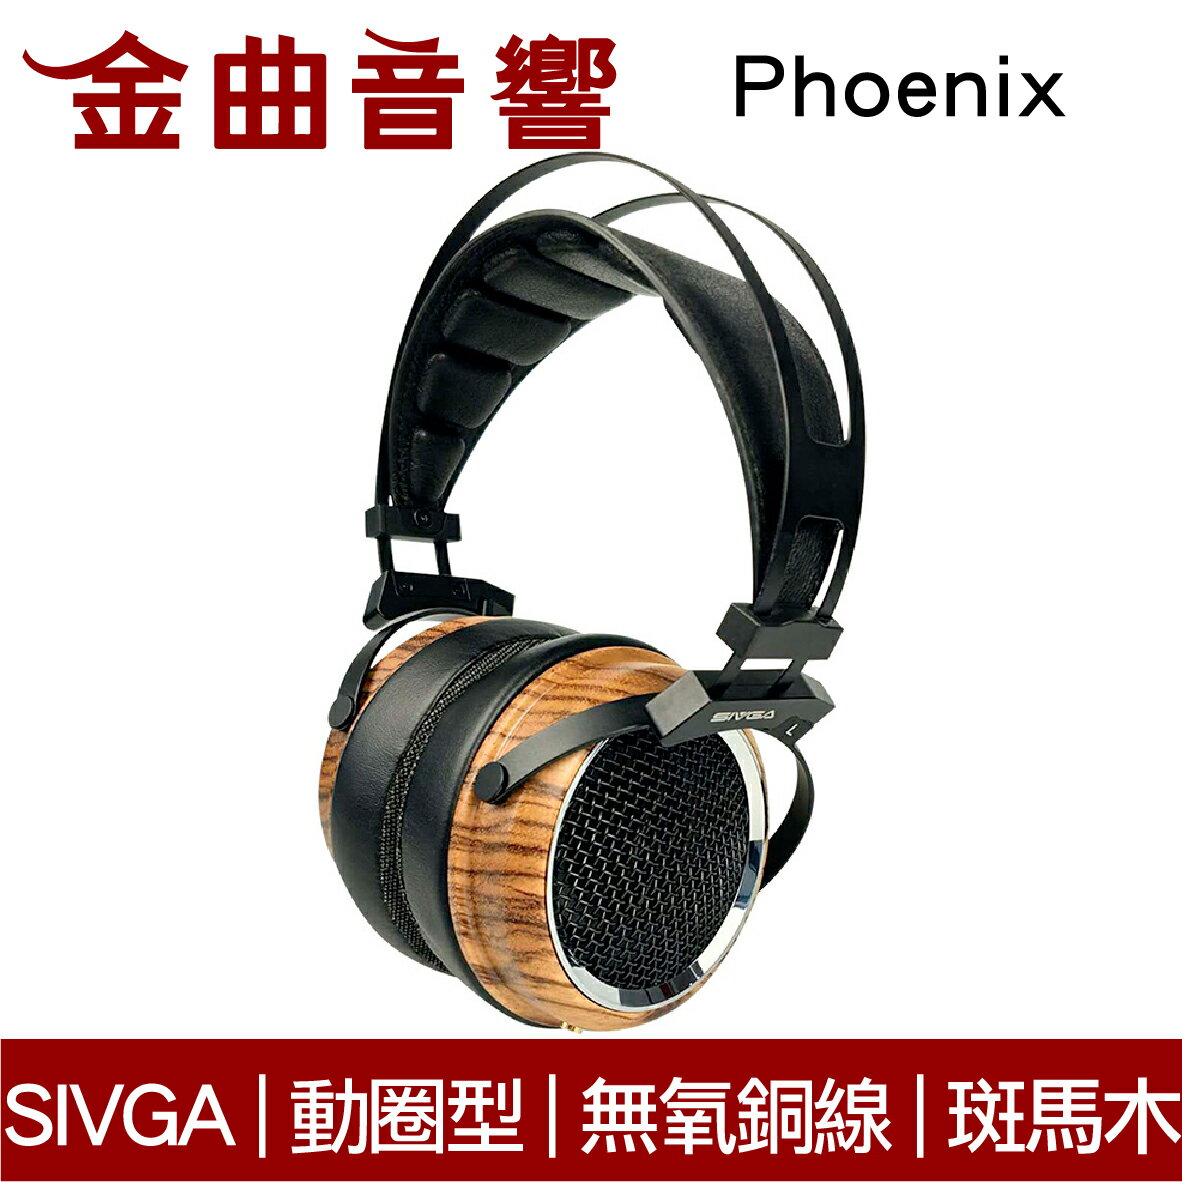 【領券折100】SIVGA Phoenix 鳳凰 斑馬木 32Ω 動圈型 HiFi 可換線 耳罩式 耳機 | 金曲音響 | 金曲音響直營店 |  樂天市場Rakuten